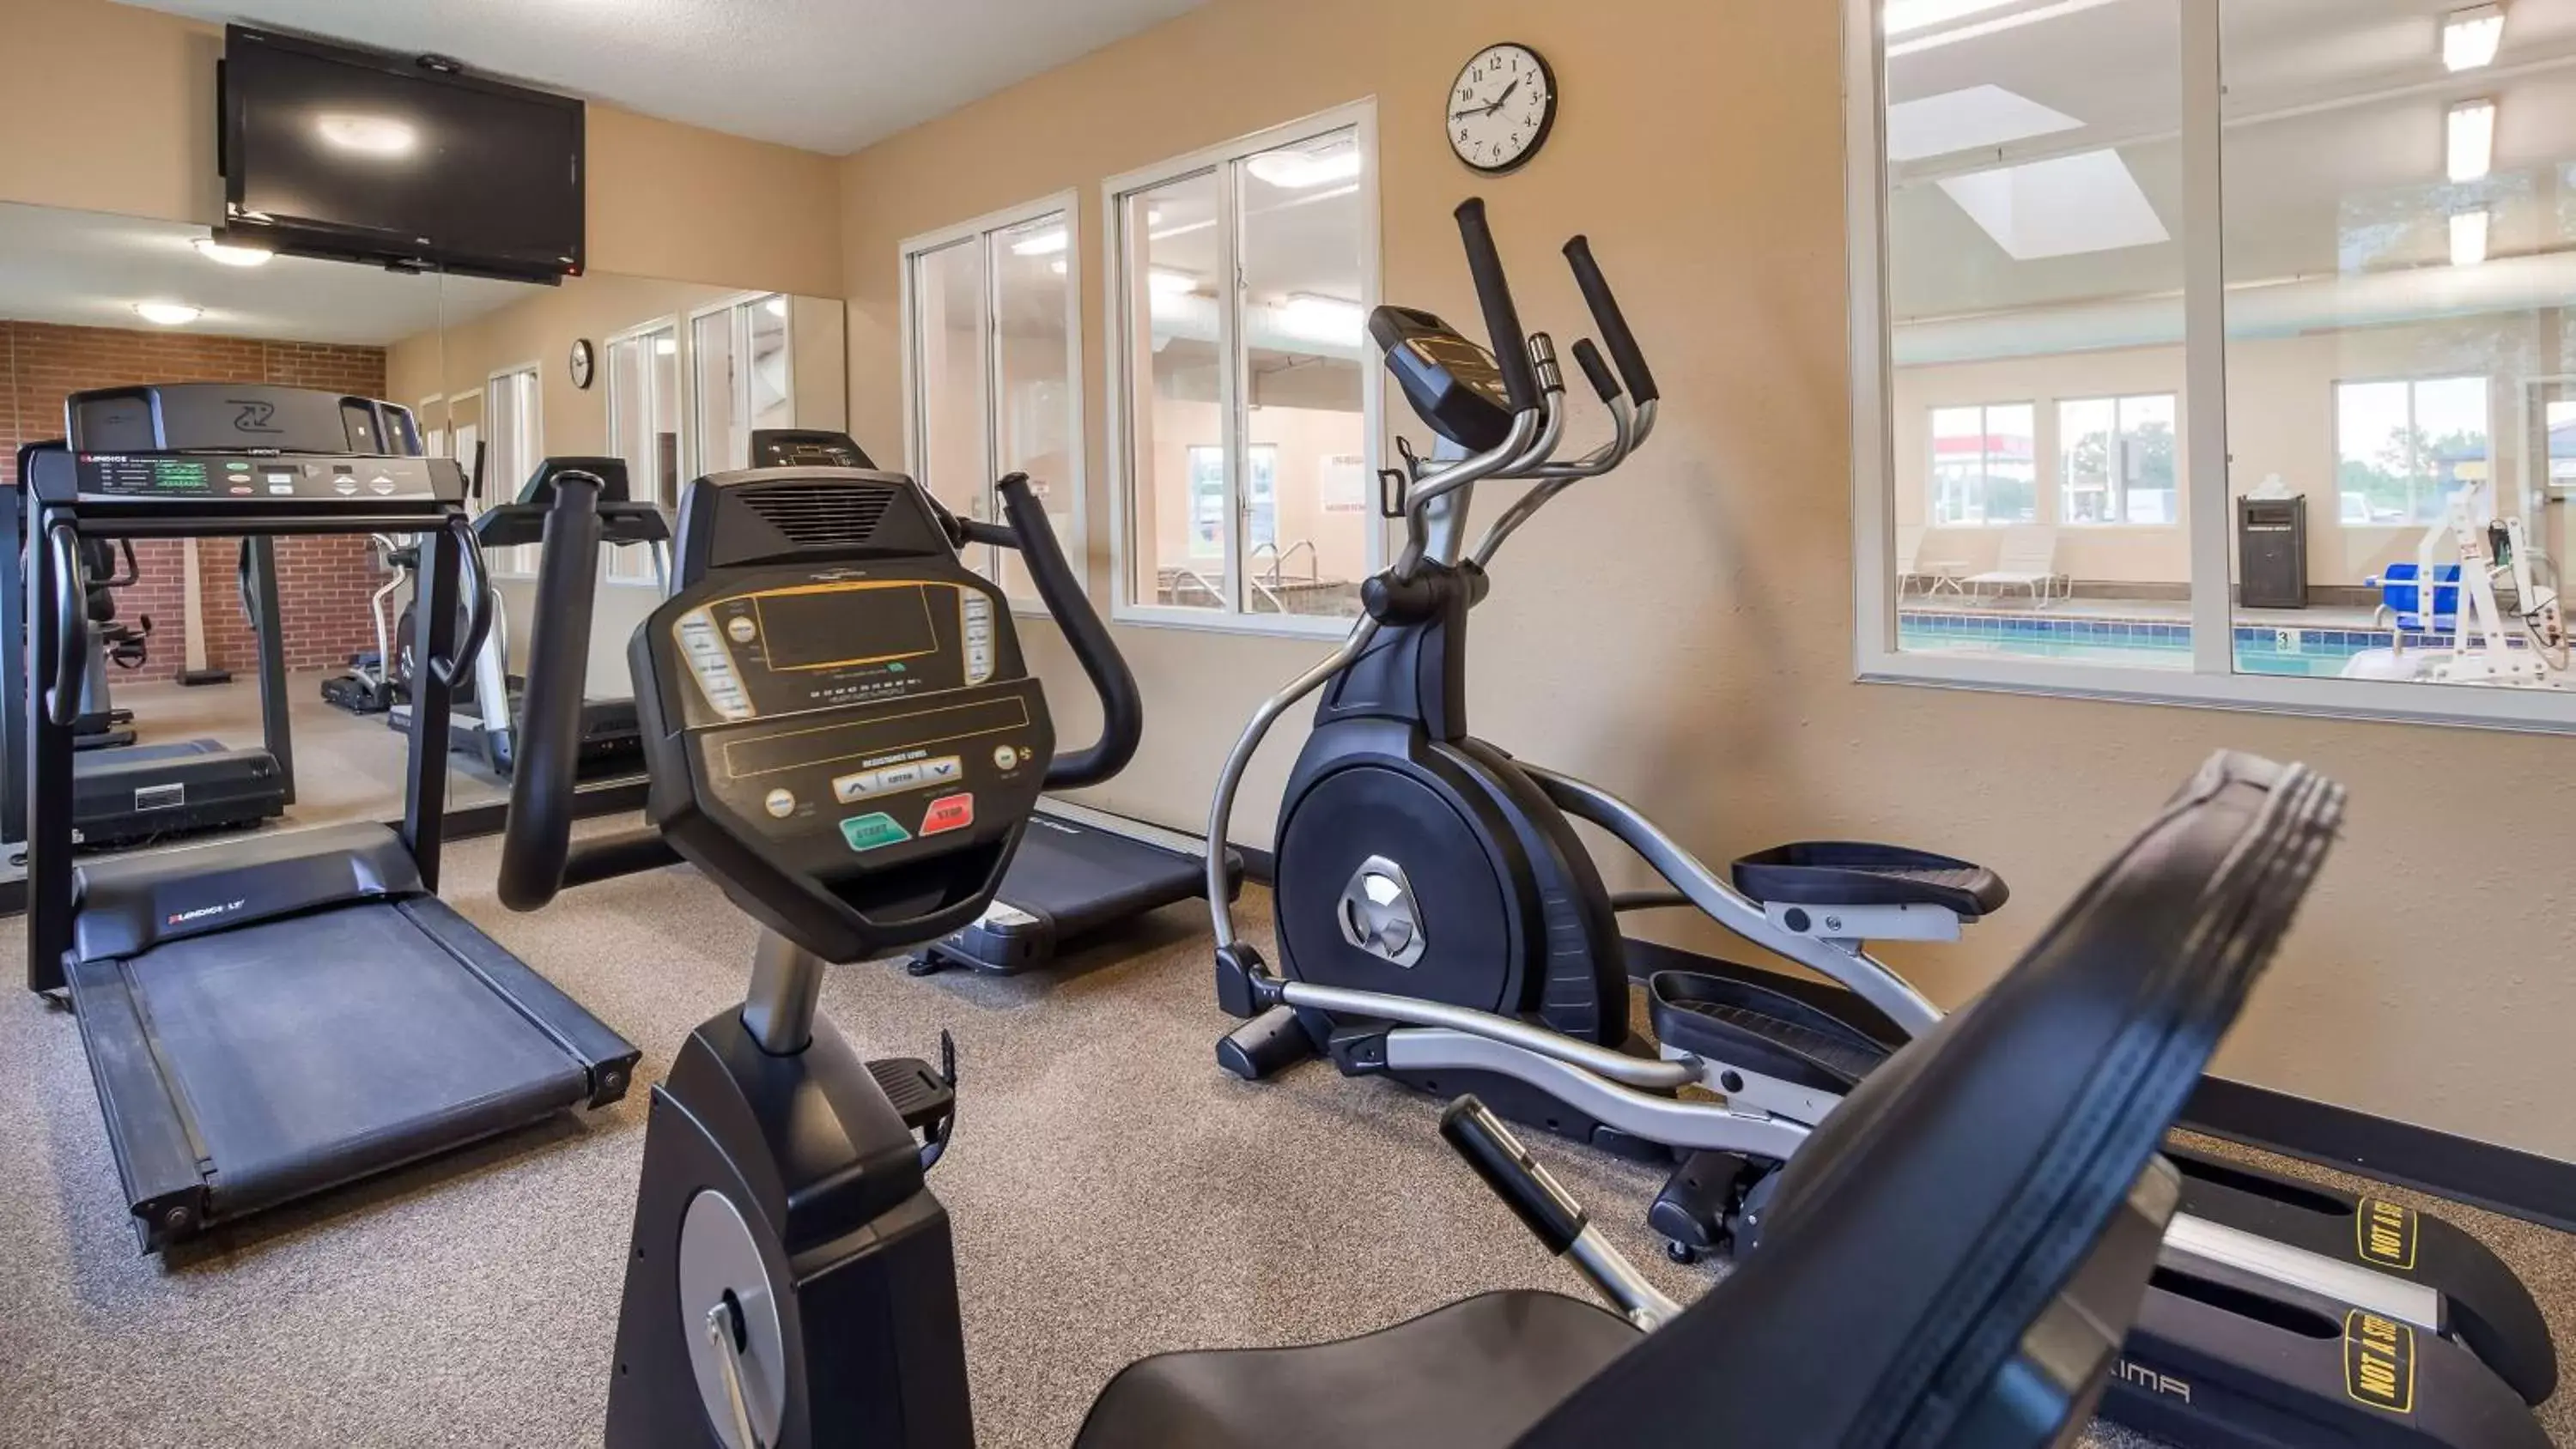 Fitness centre/facilities, Fitness Center/Facilities in Best Western Nebraska City Inn